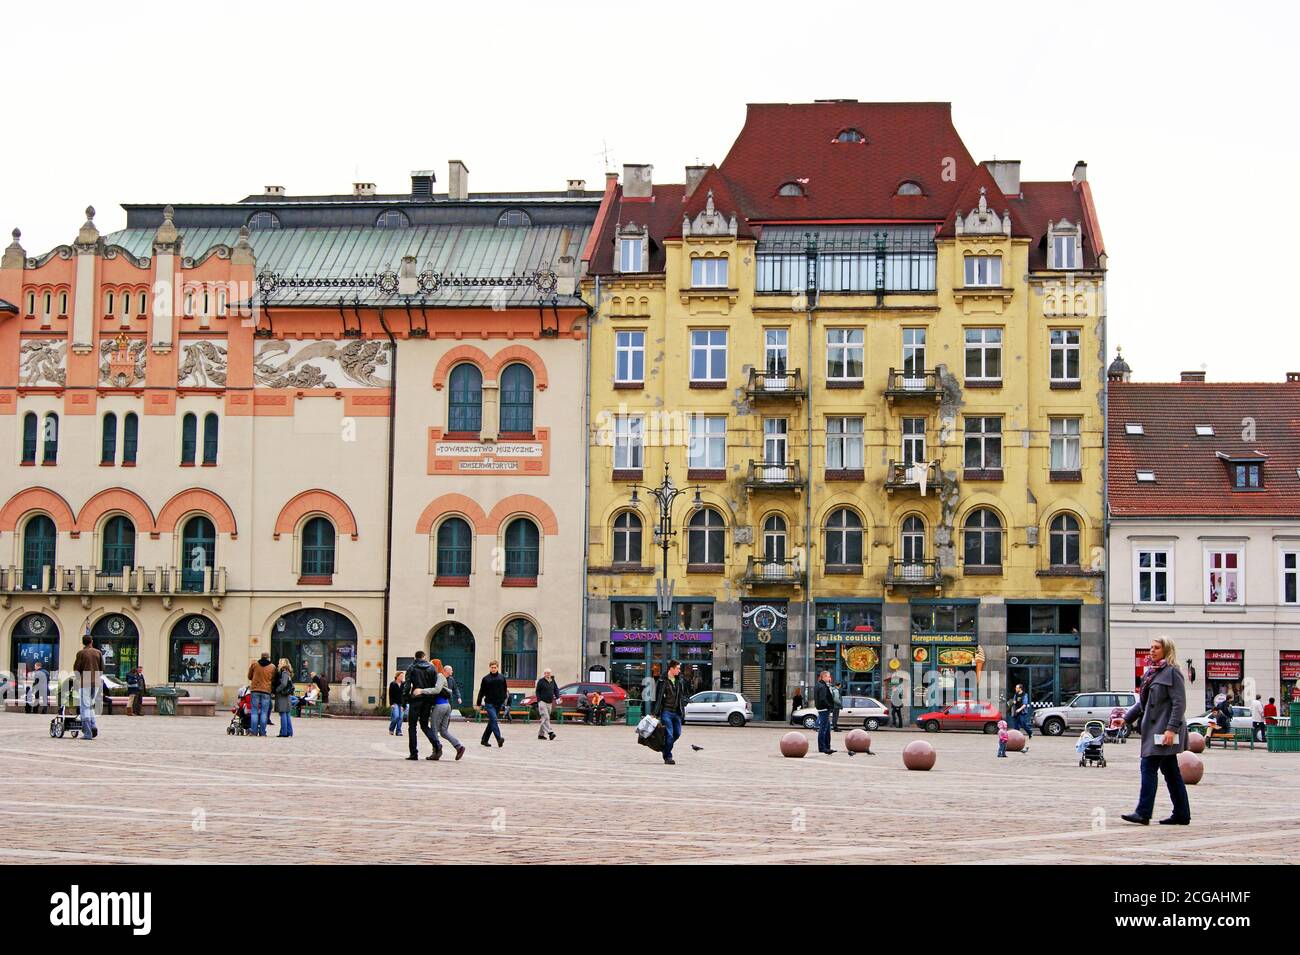 L'architettura dell'Europa orientale si trova in tutto il paesaggio urbano di Cracovia, in Polonia. Foto Stock